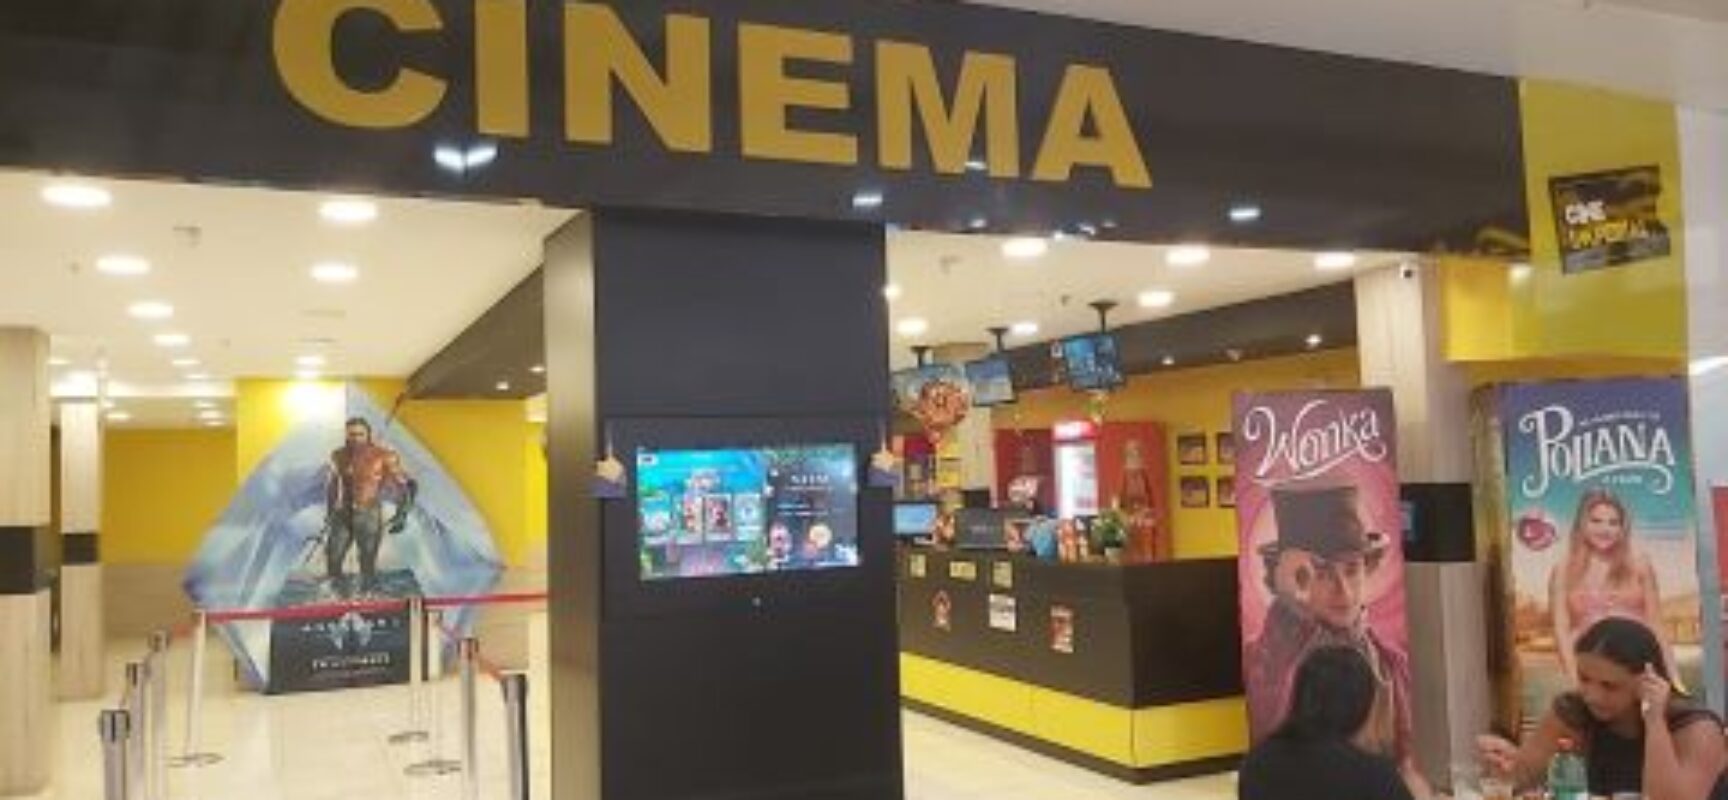 Cinema lança campanha “Todos Pagam Meia” em sessões de dezembro